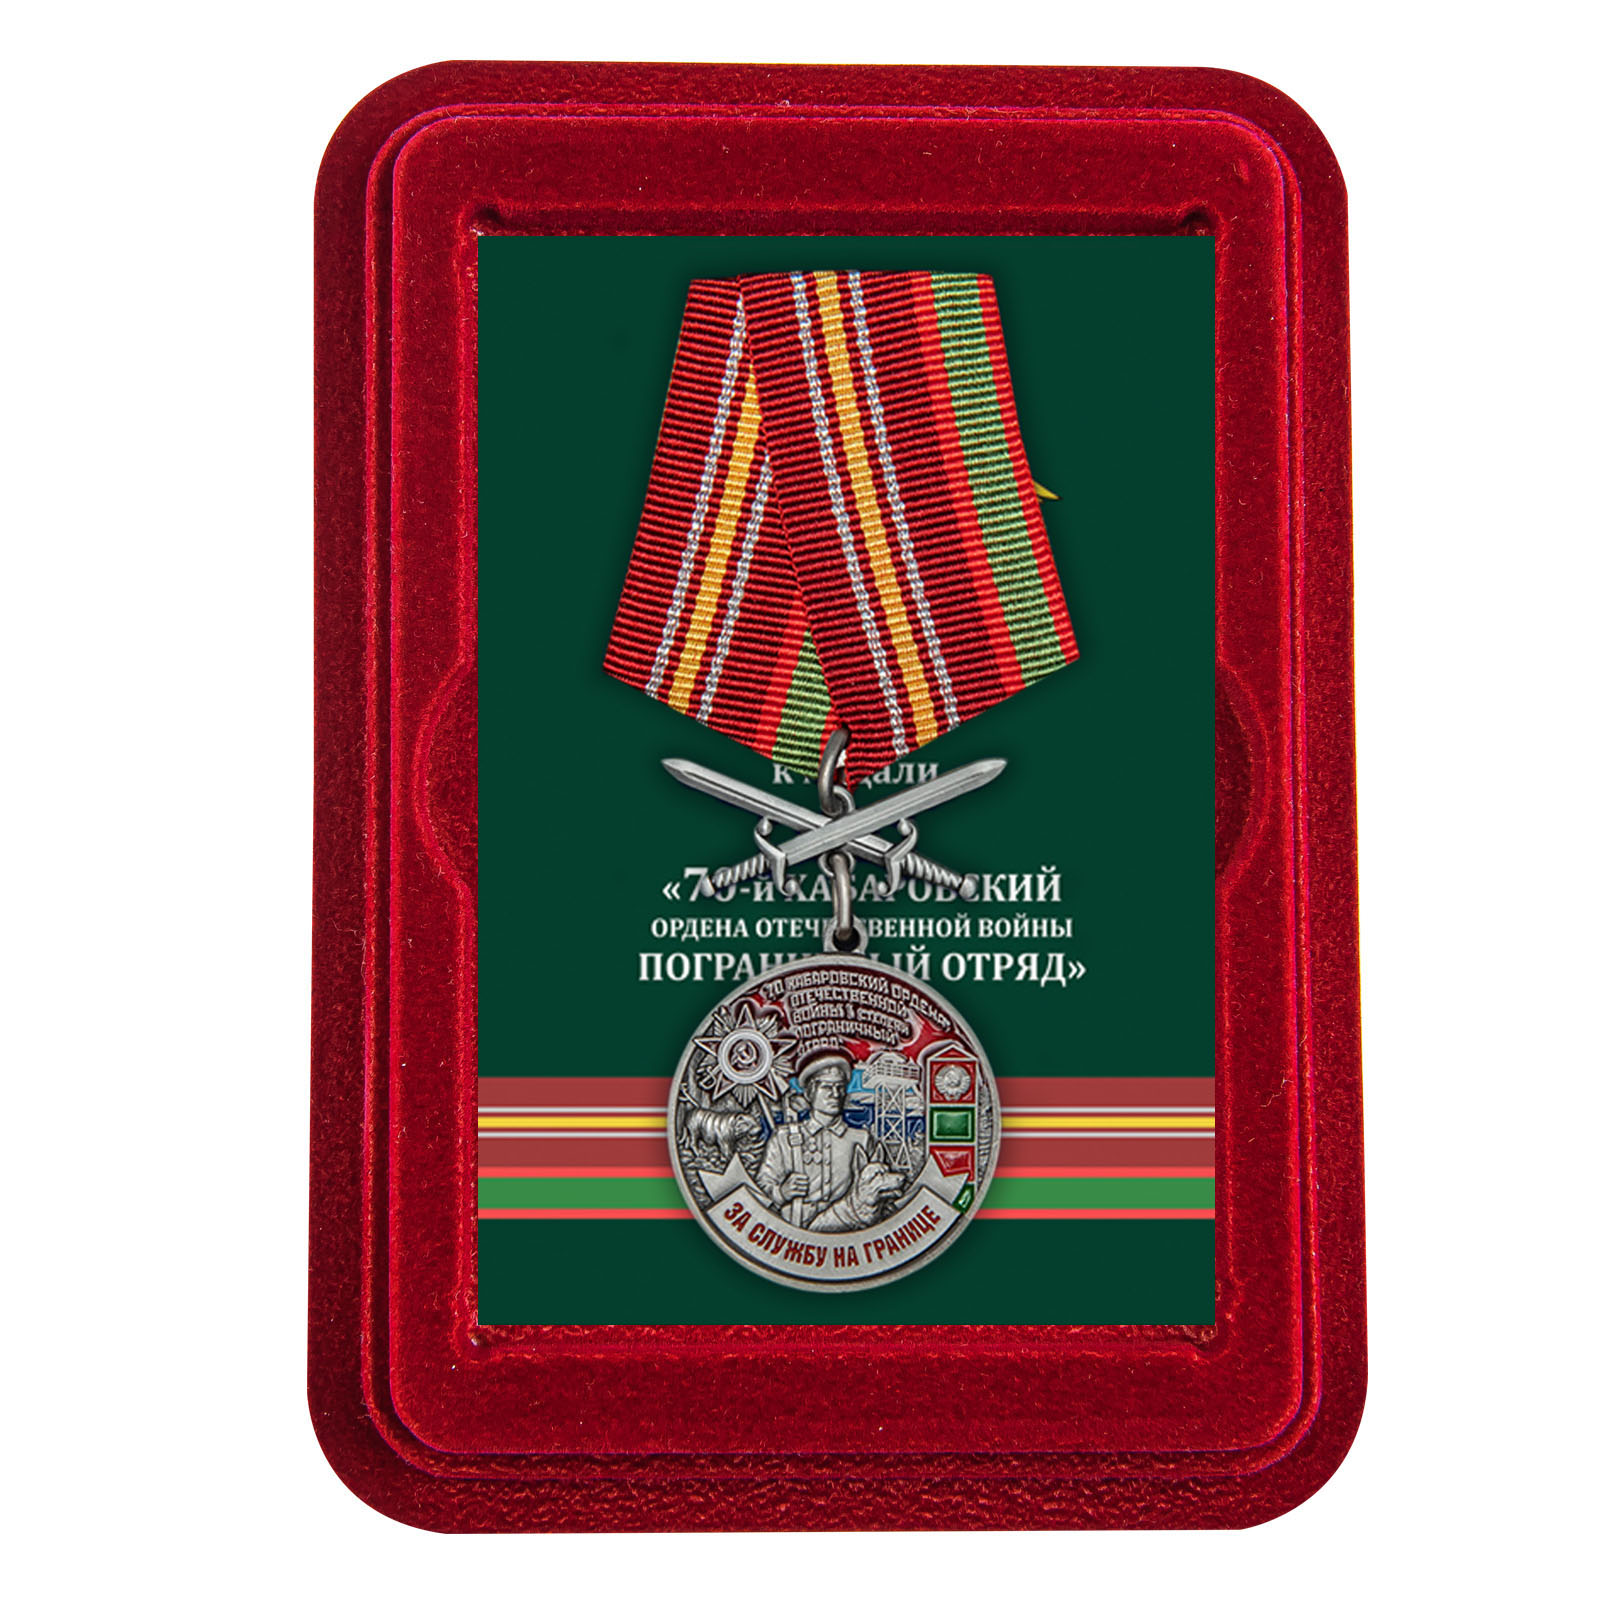 Купить медаль За службу в Хабаровском пограничном отряде в подарок